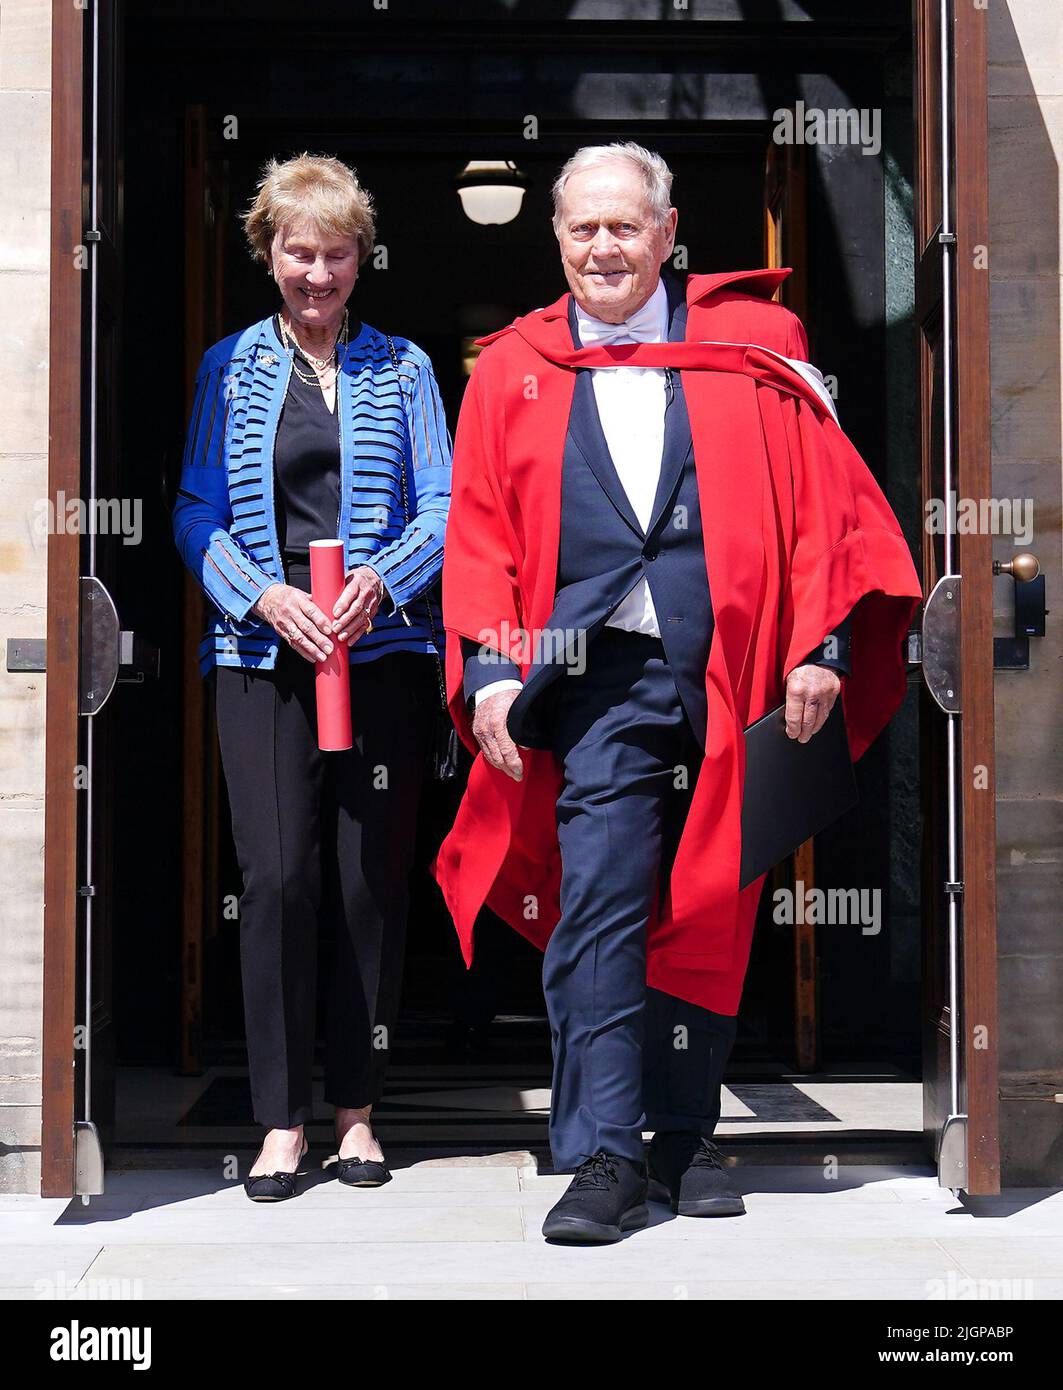 Jack Nicklaus (à droite), avec sa femme Barbara Nicklaus, après avoir été nommé citoyen honoraire de St Andrews par le Royal Burgh of St Andrews Community Council lors de la cérémonie à la salle des jeunes, à St Andrews. Date de la photo: Mardi 12 juillet 2022. Banque D'Images